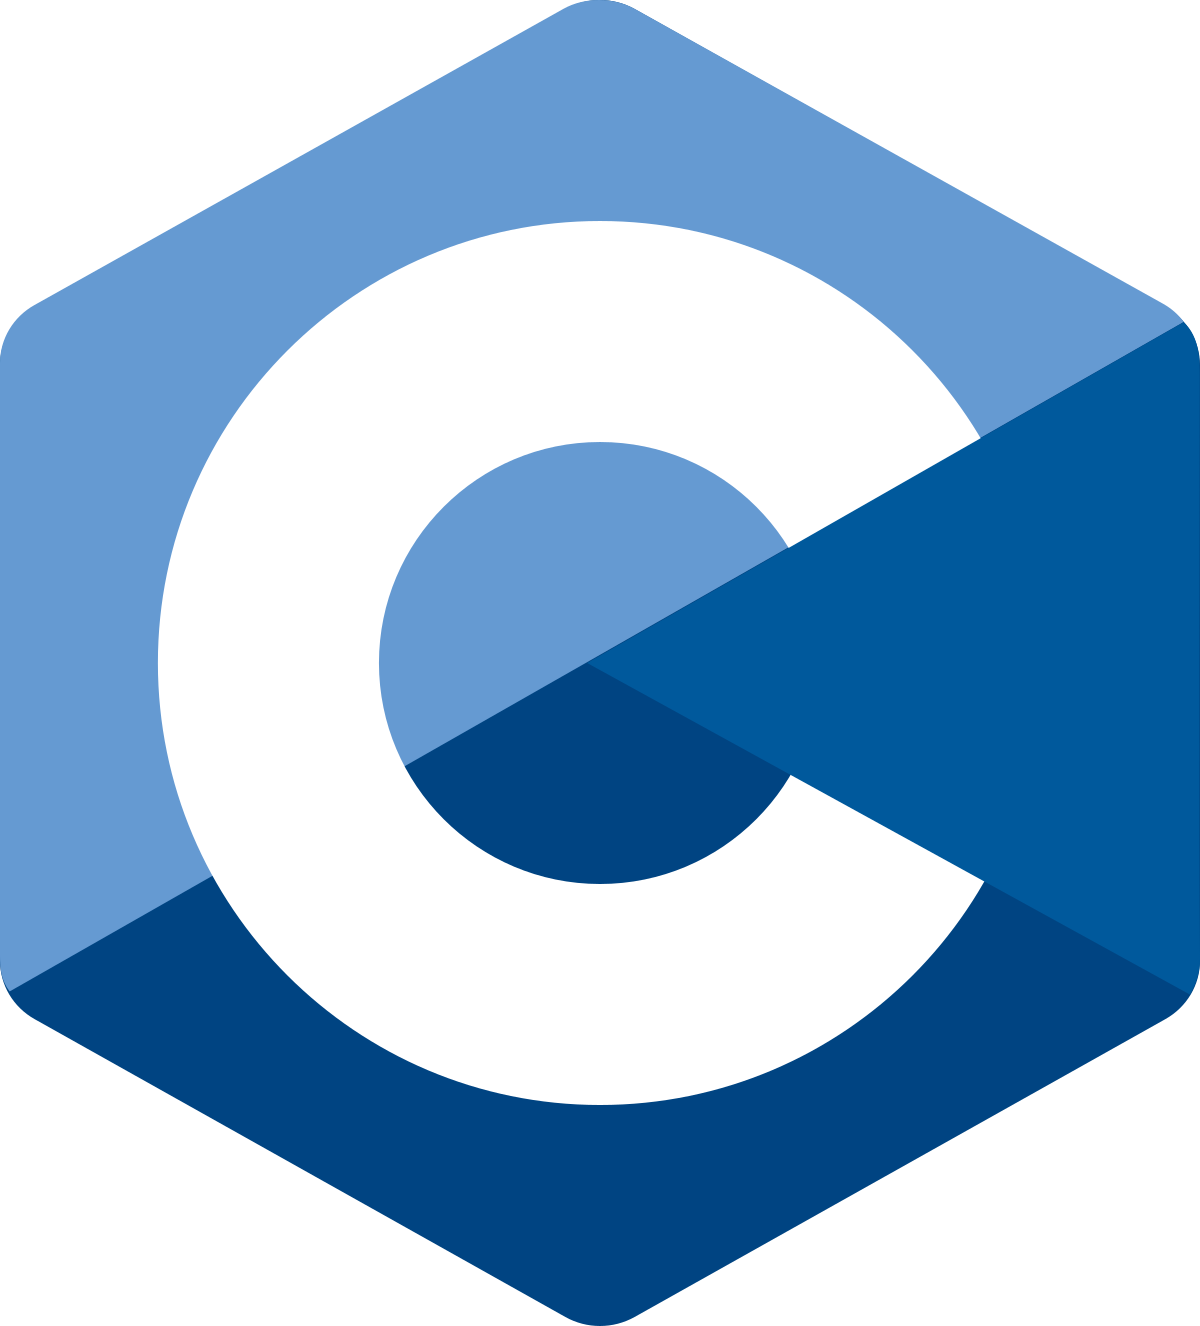 logo C language